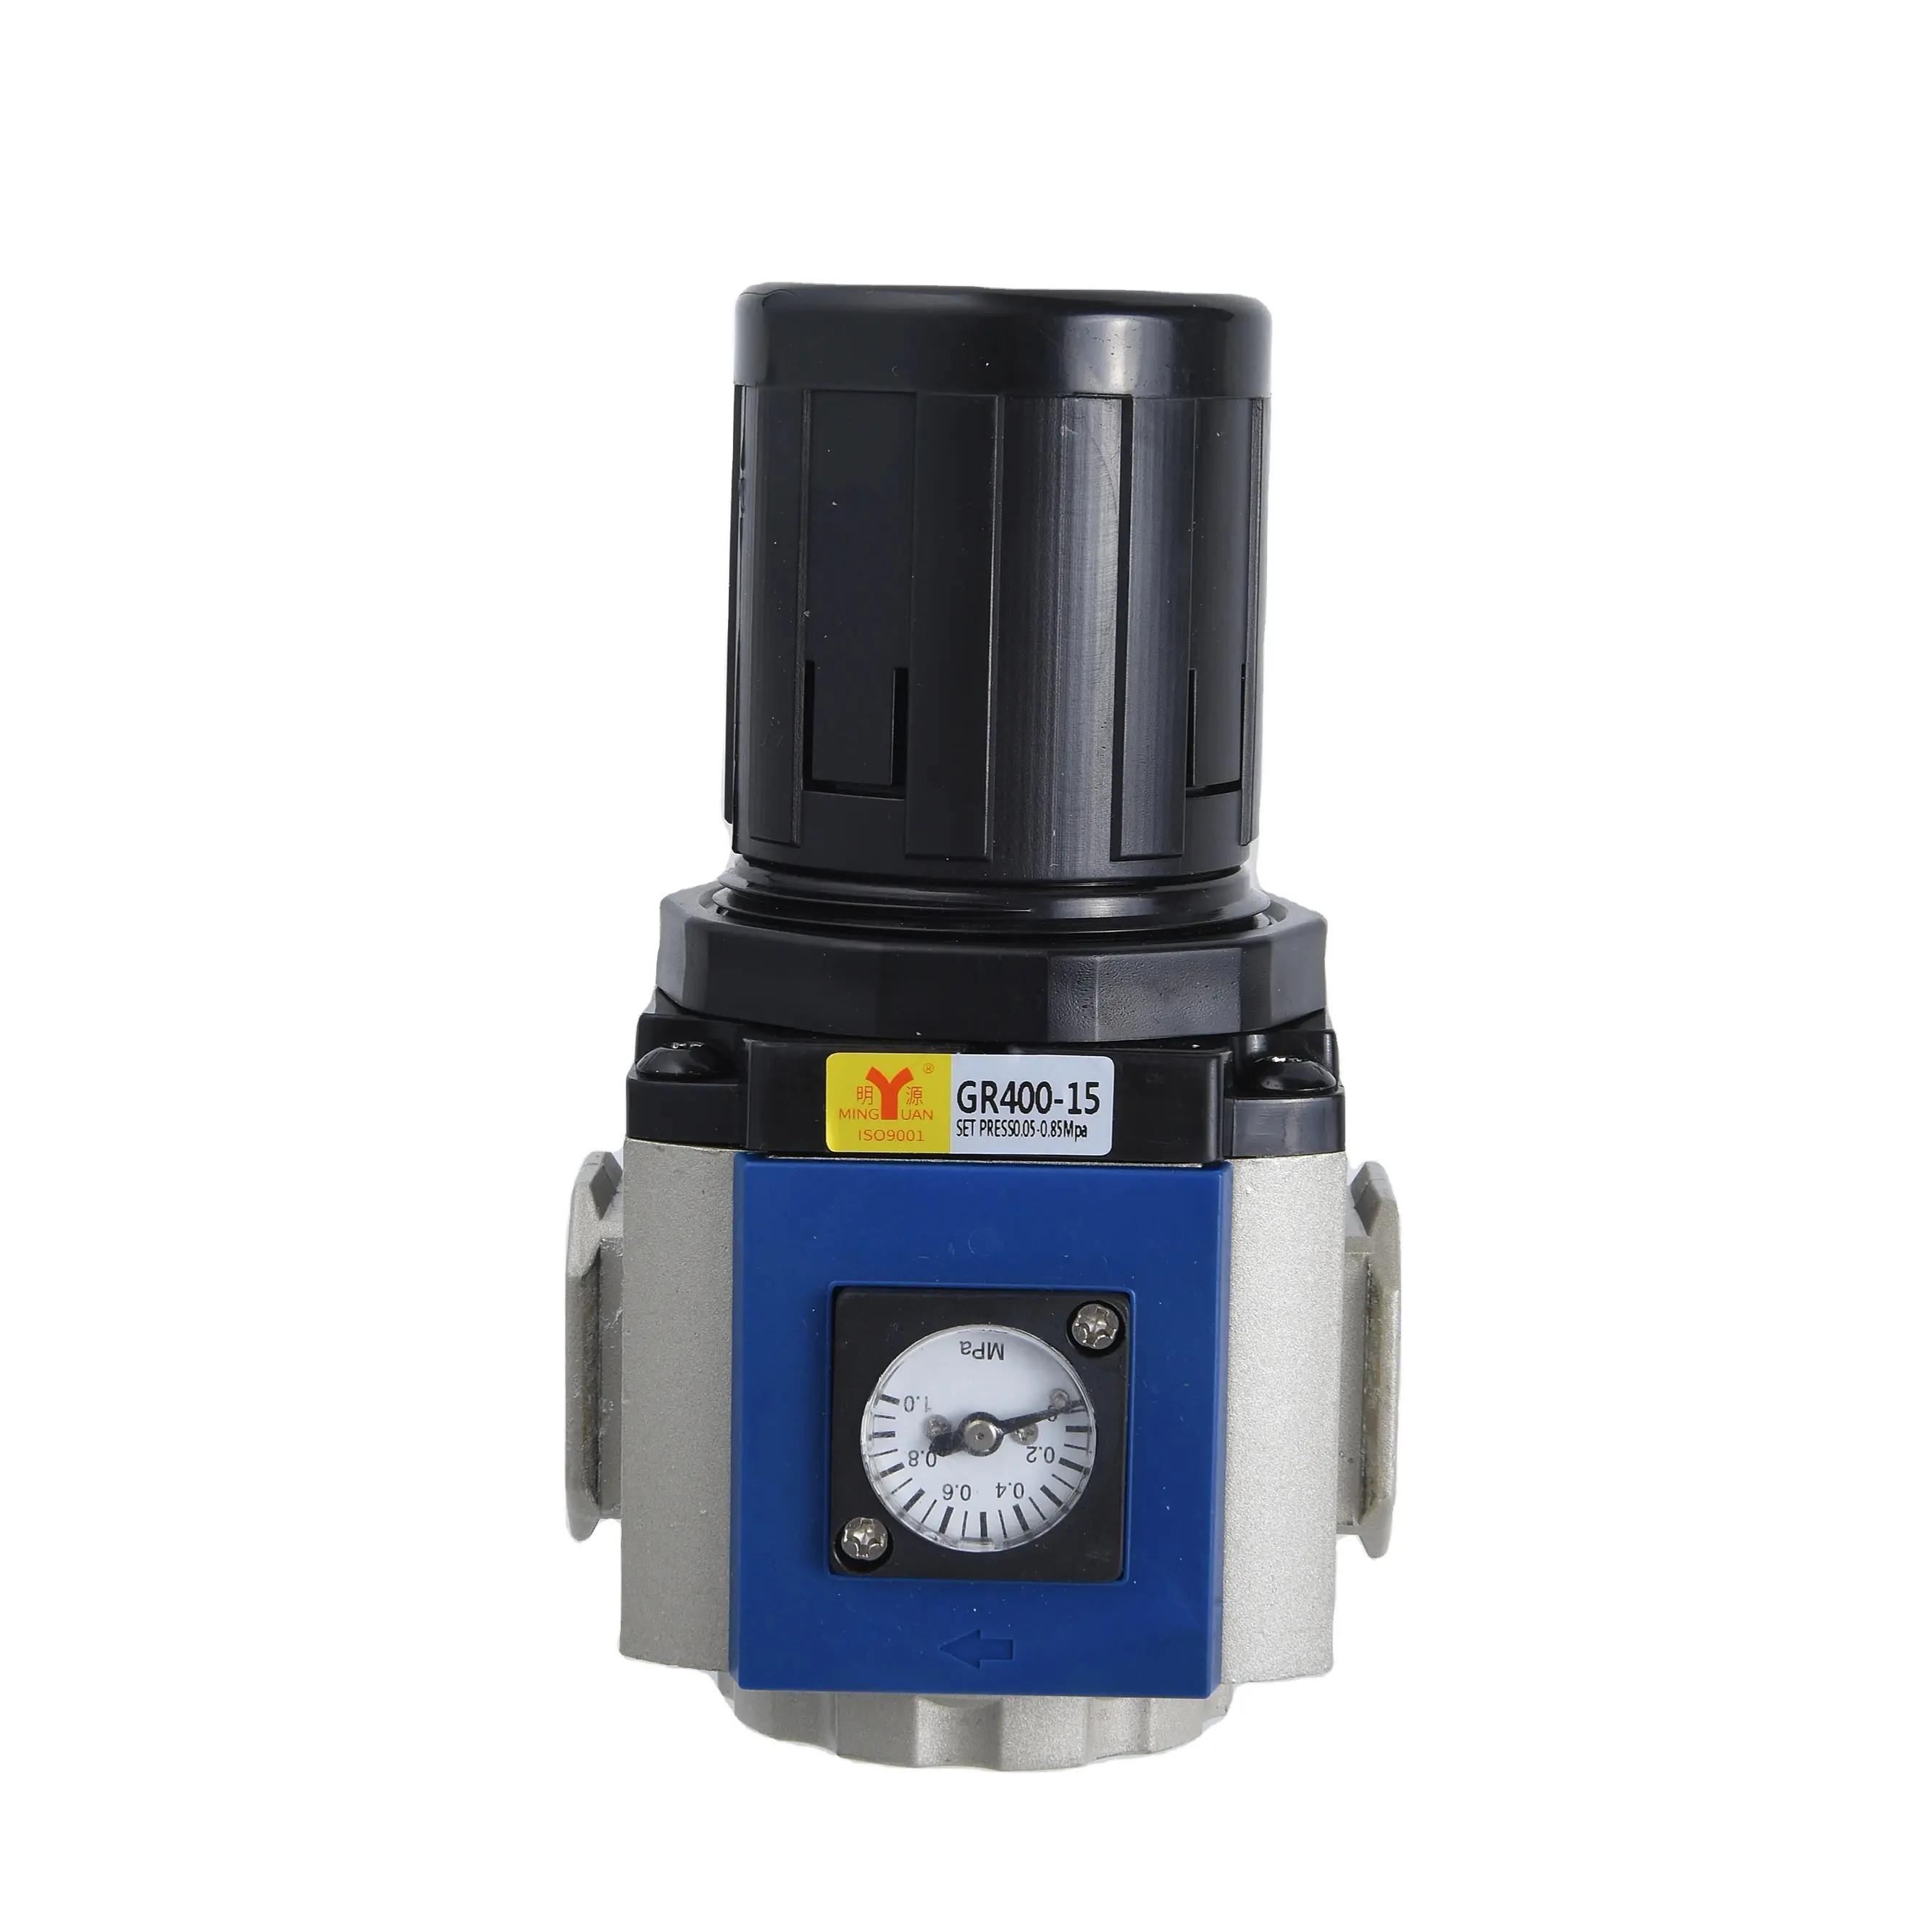 Prezzo basso GR400-15 PT 1/2 regolatore di pressione dell'aria compressa con staffa unità di trattamento della sorgente d'aria